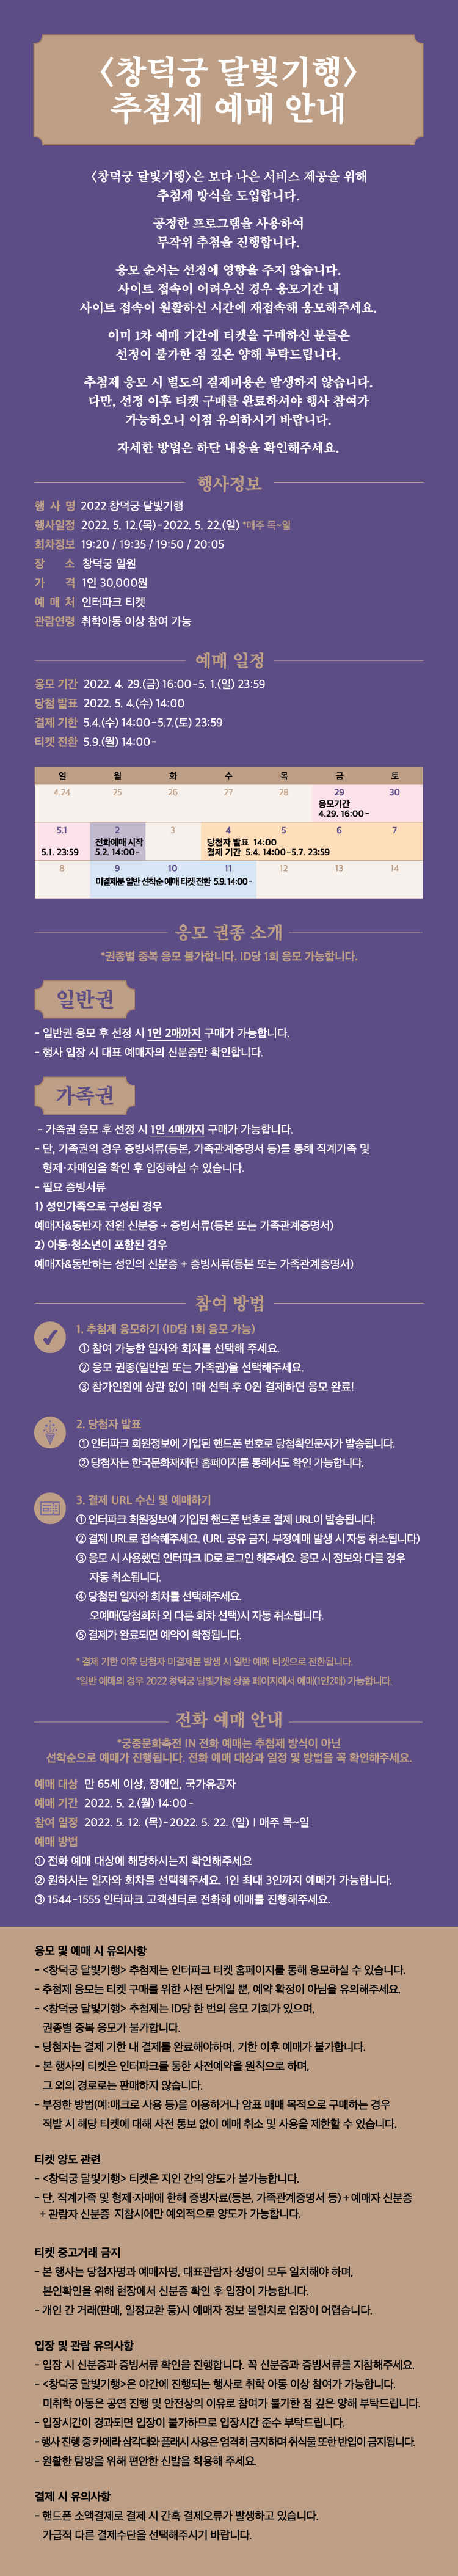 창덕궁 달빛기행 궁중문화축전 기간 행사 안내 웹페이지